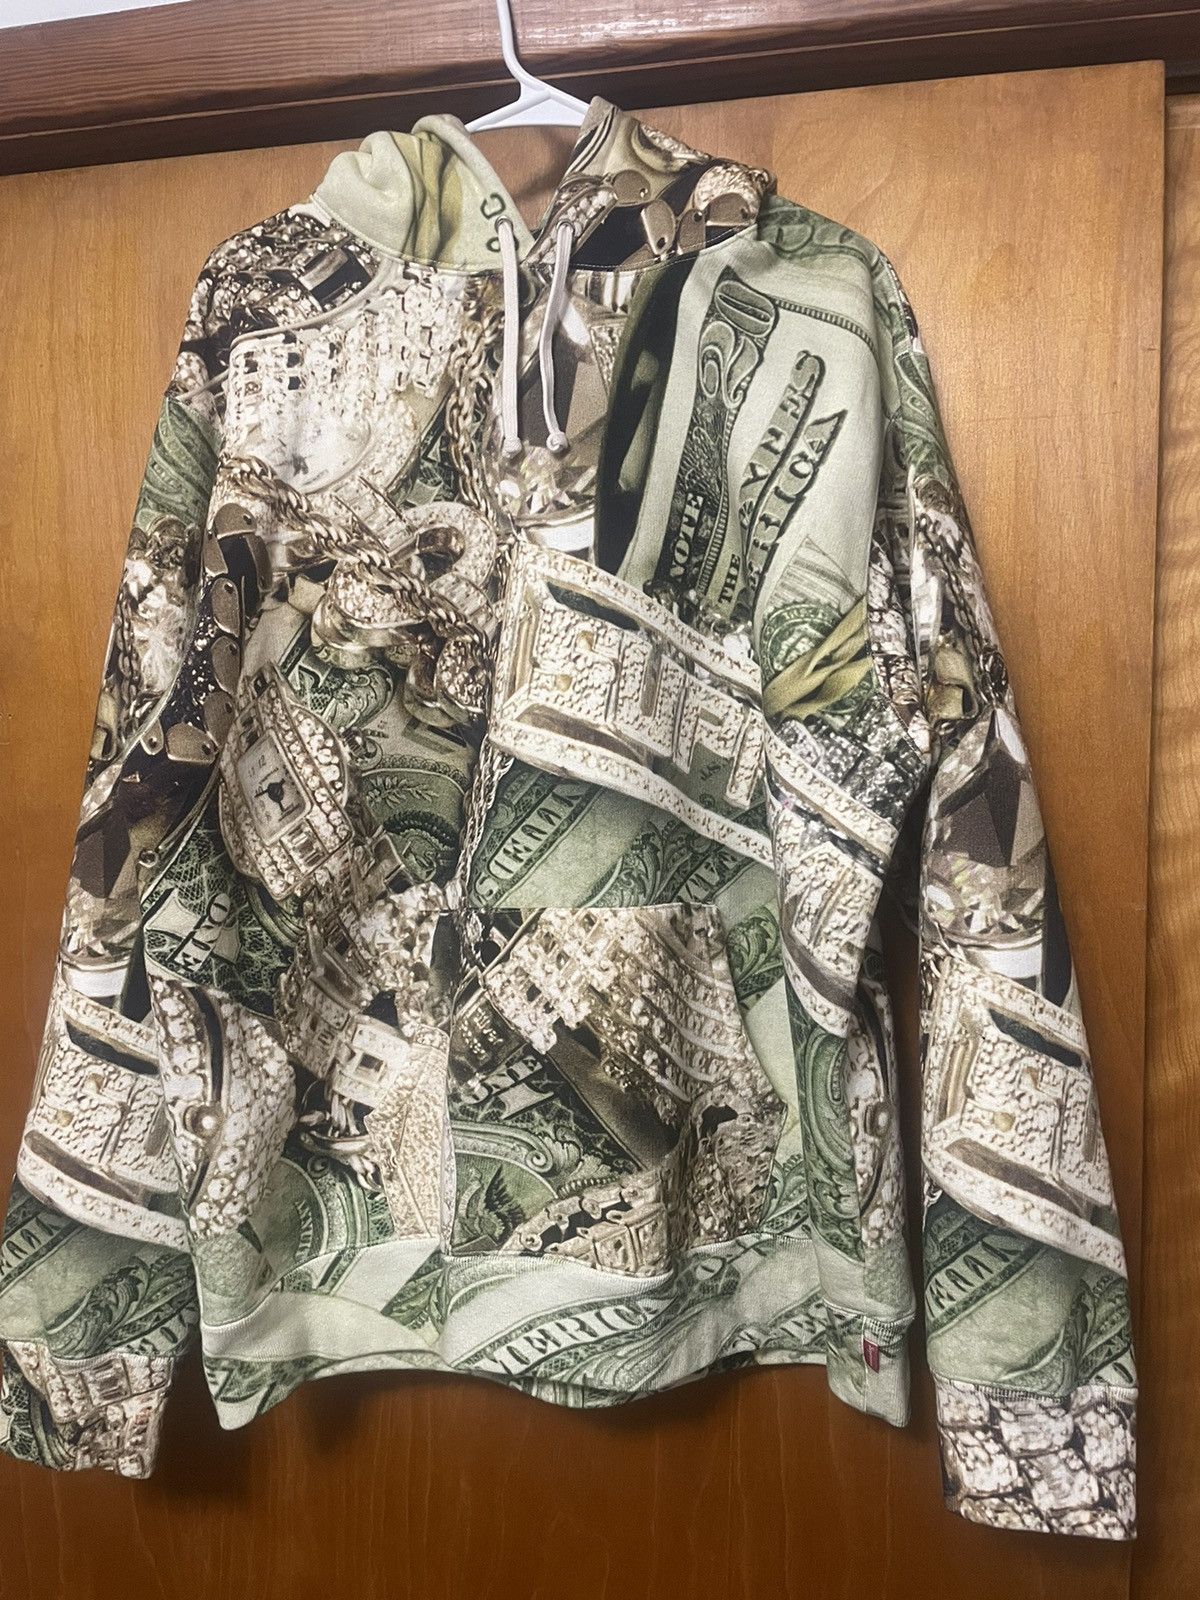 Money bling hoodie